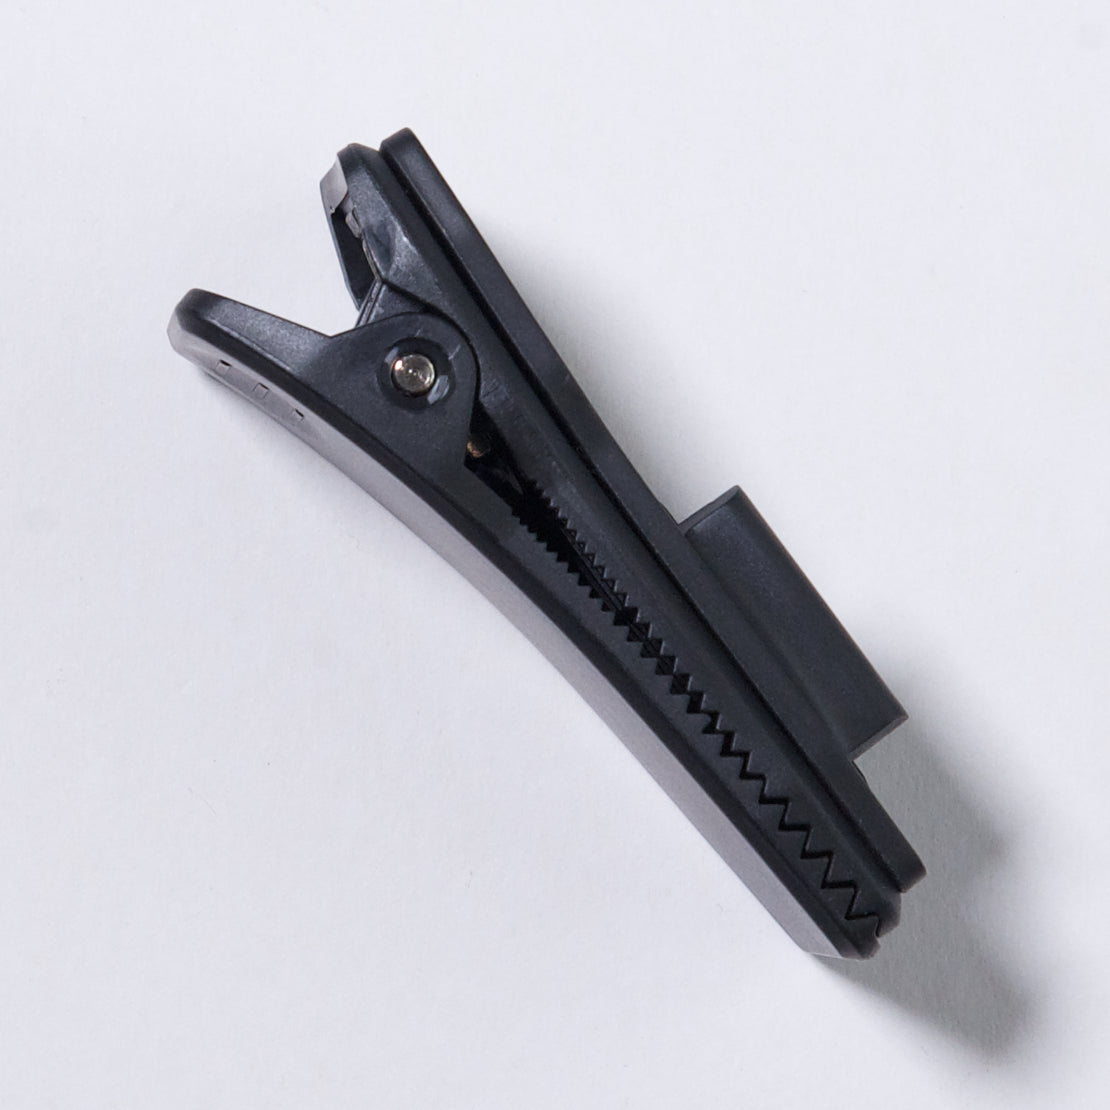 GOPRO clip con rotacion 360 grados de color negro